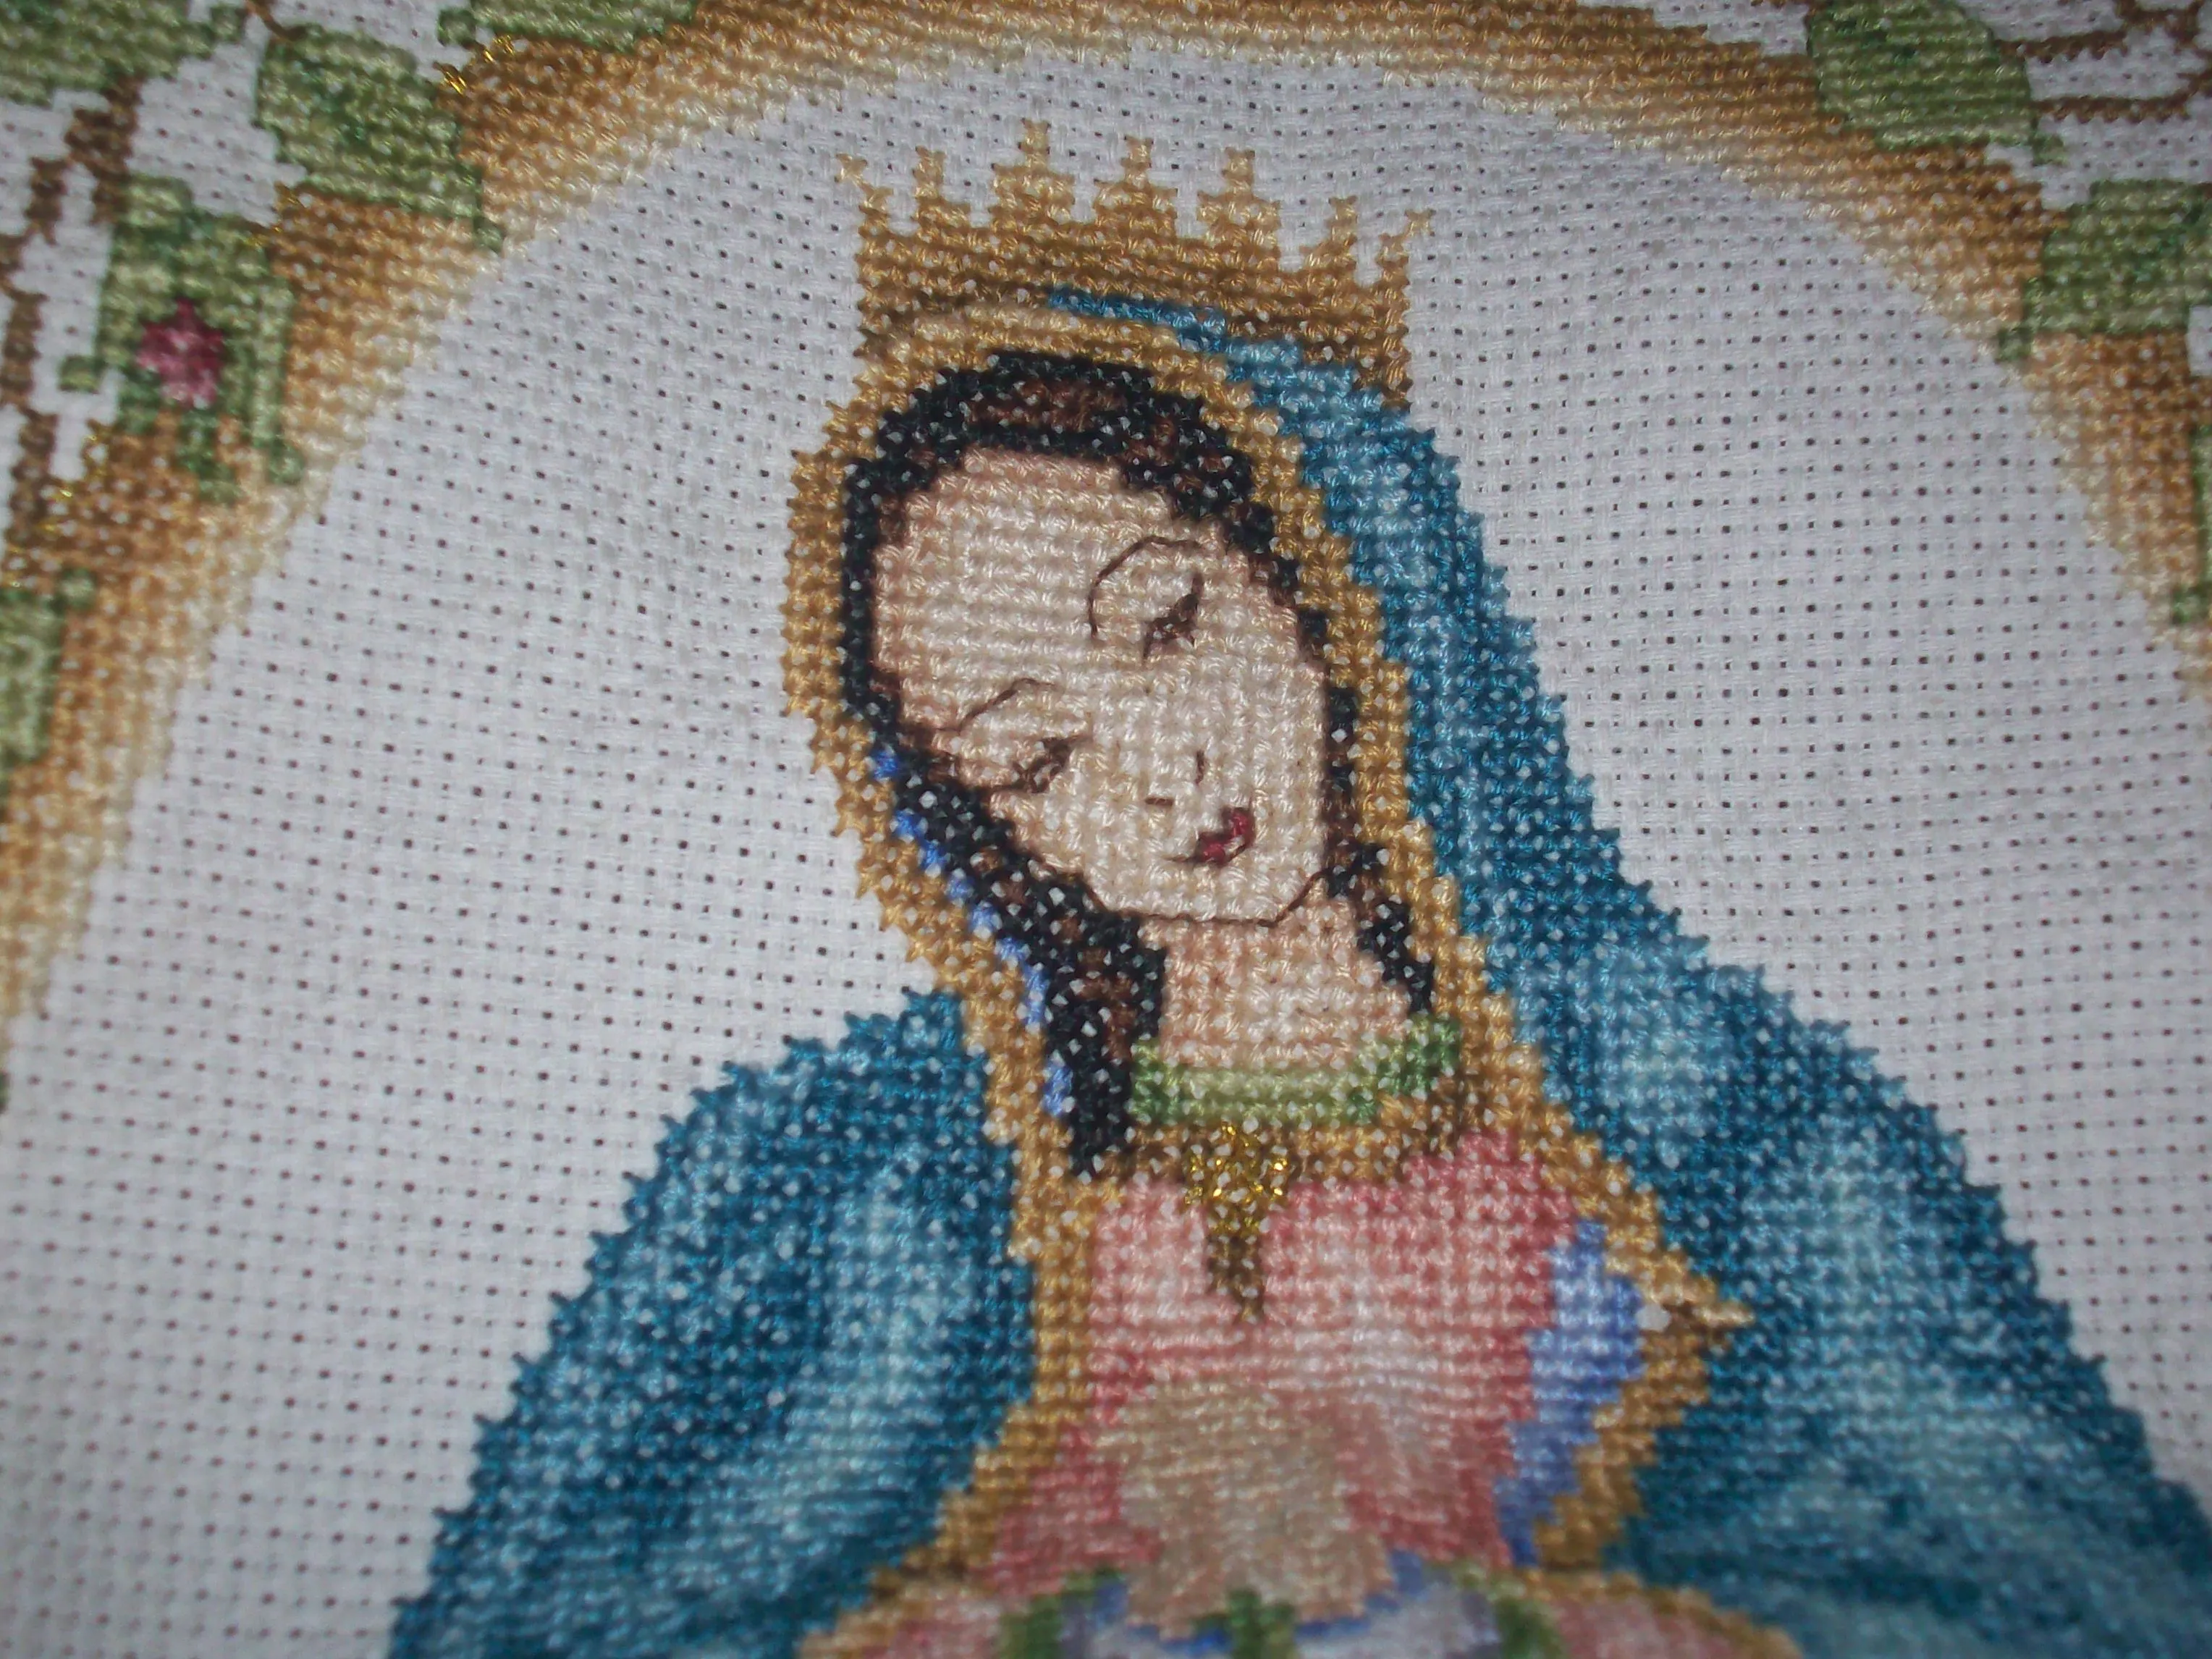 Imagenes De La Virgen De Guadalupe En Punto De Cruz MEMES Pictures